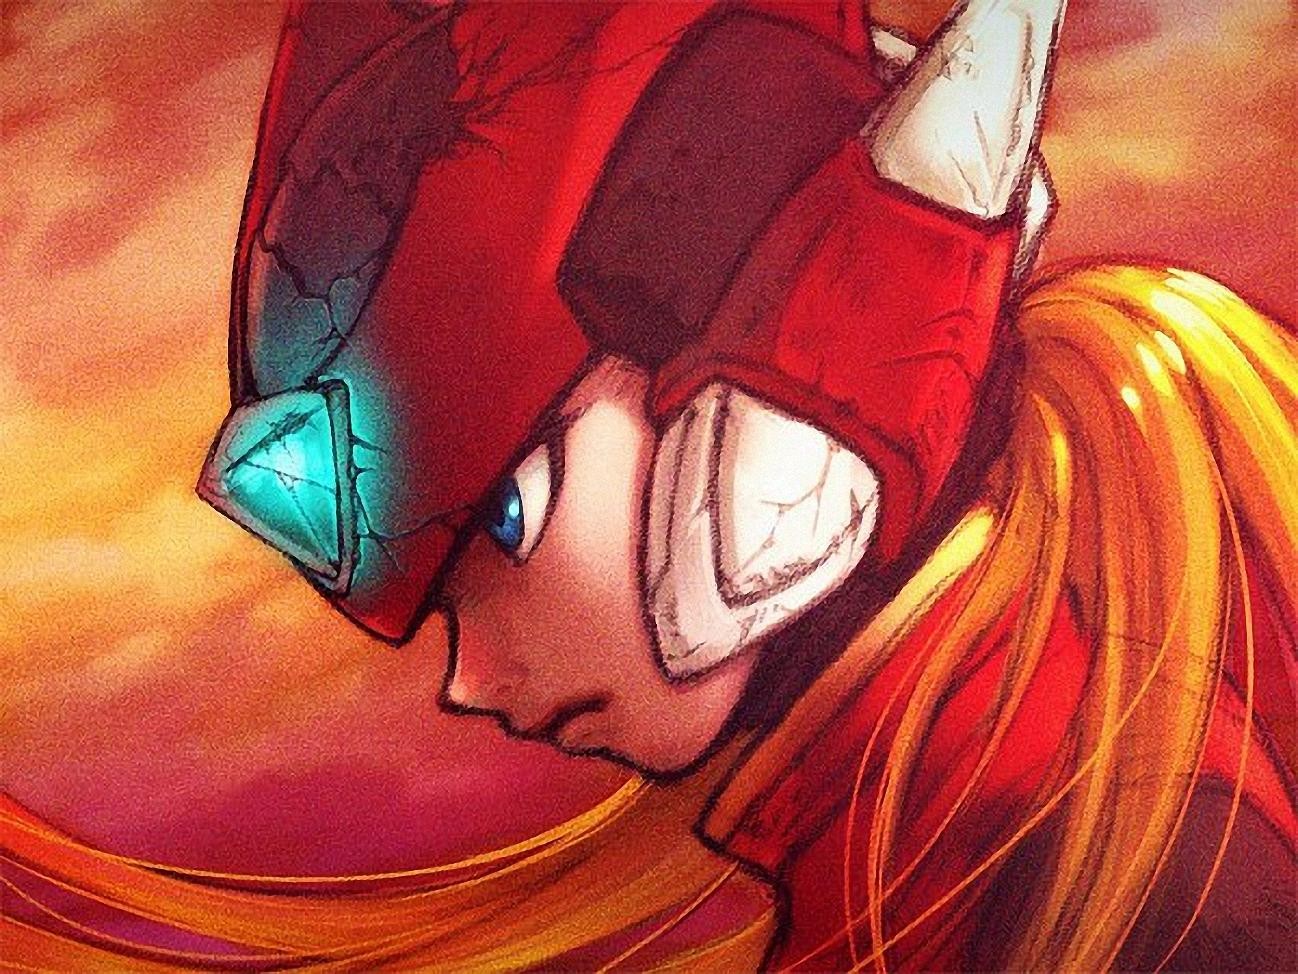 Anime 1298x974 Mega Man Zero Megaman Zero video games video game characters video game art anime